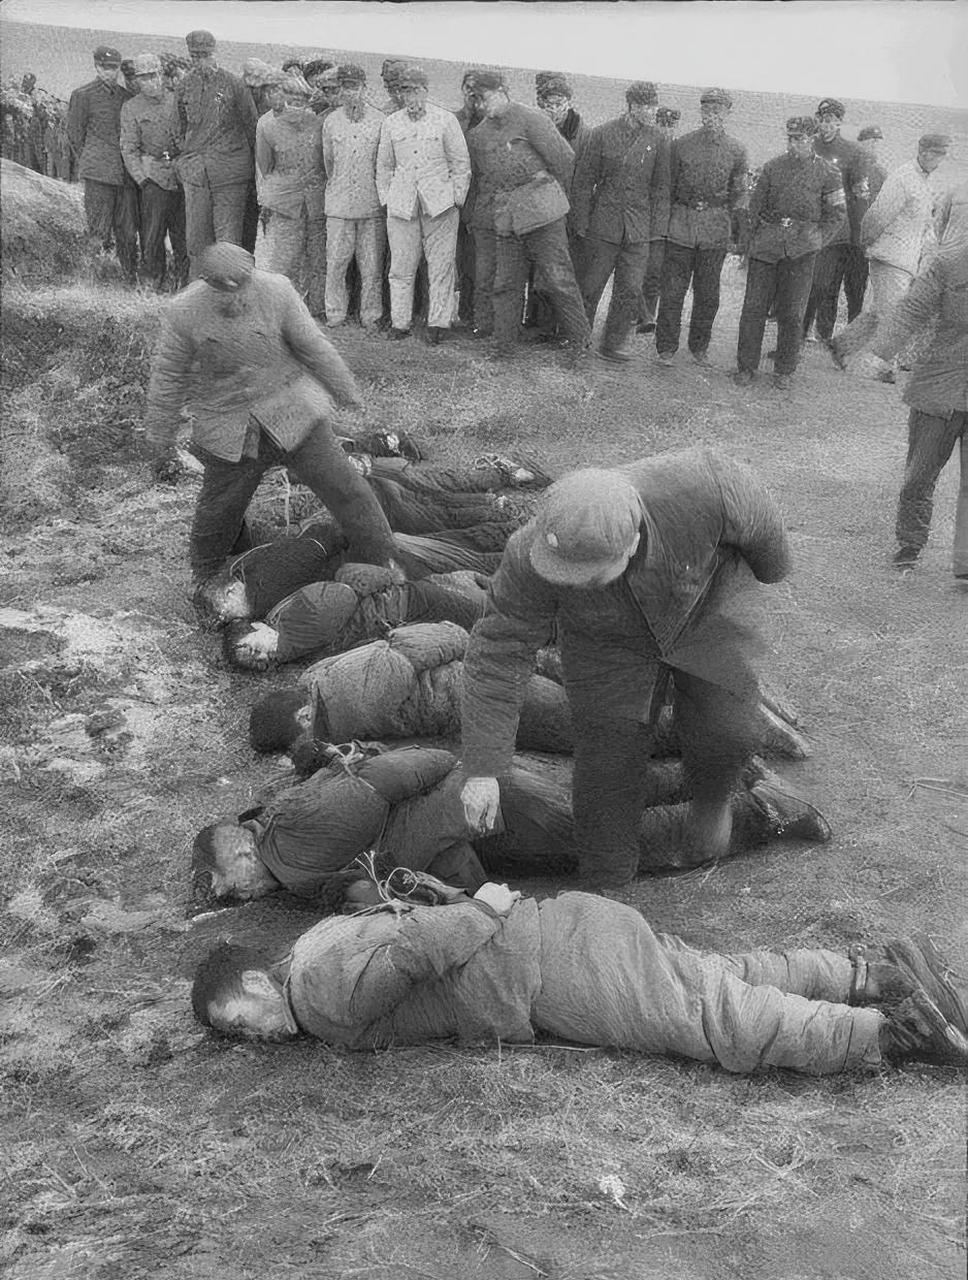 这是60年代哈尔滨,死刑犯公开处决的现场,照片中的他们已经失去了生命